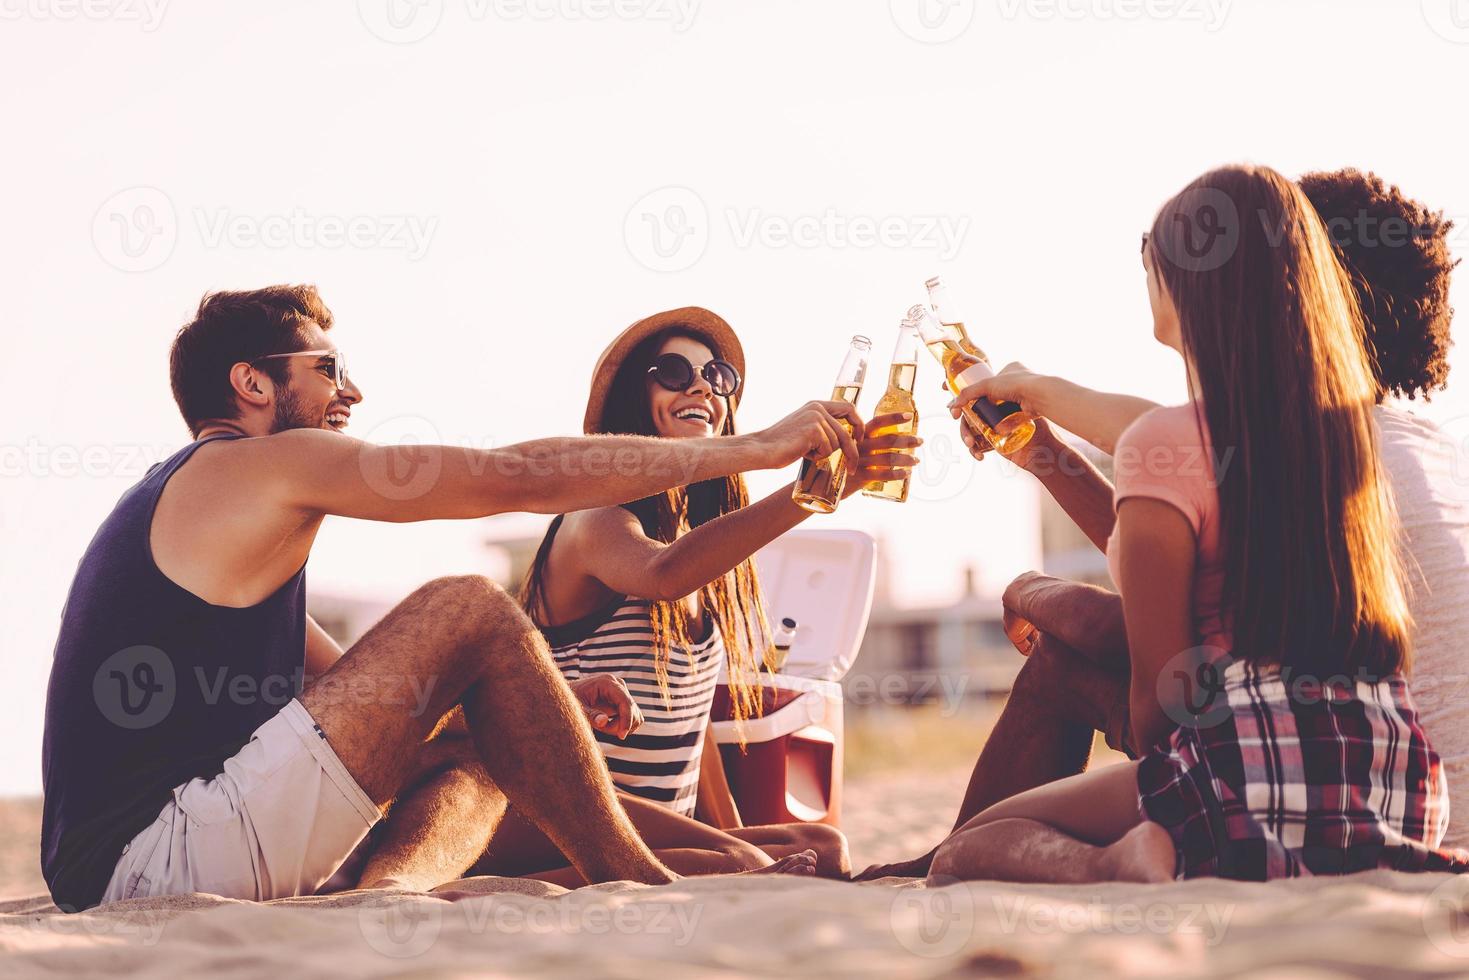 Prost fröhliche junge Leute, die mit Bierflaschen anstoßen, während sie ein Picknick am Strand genießen foto